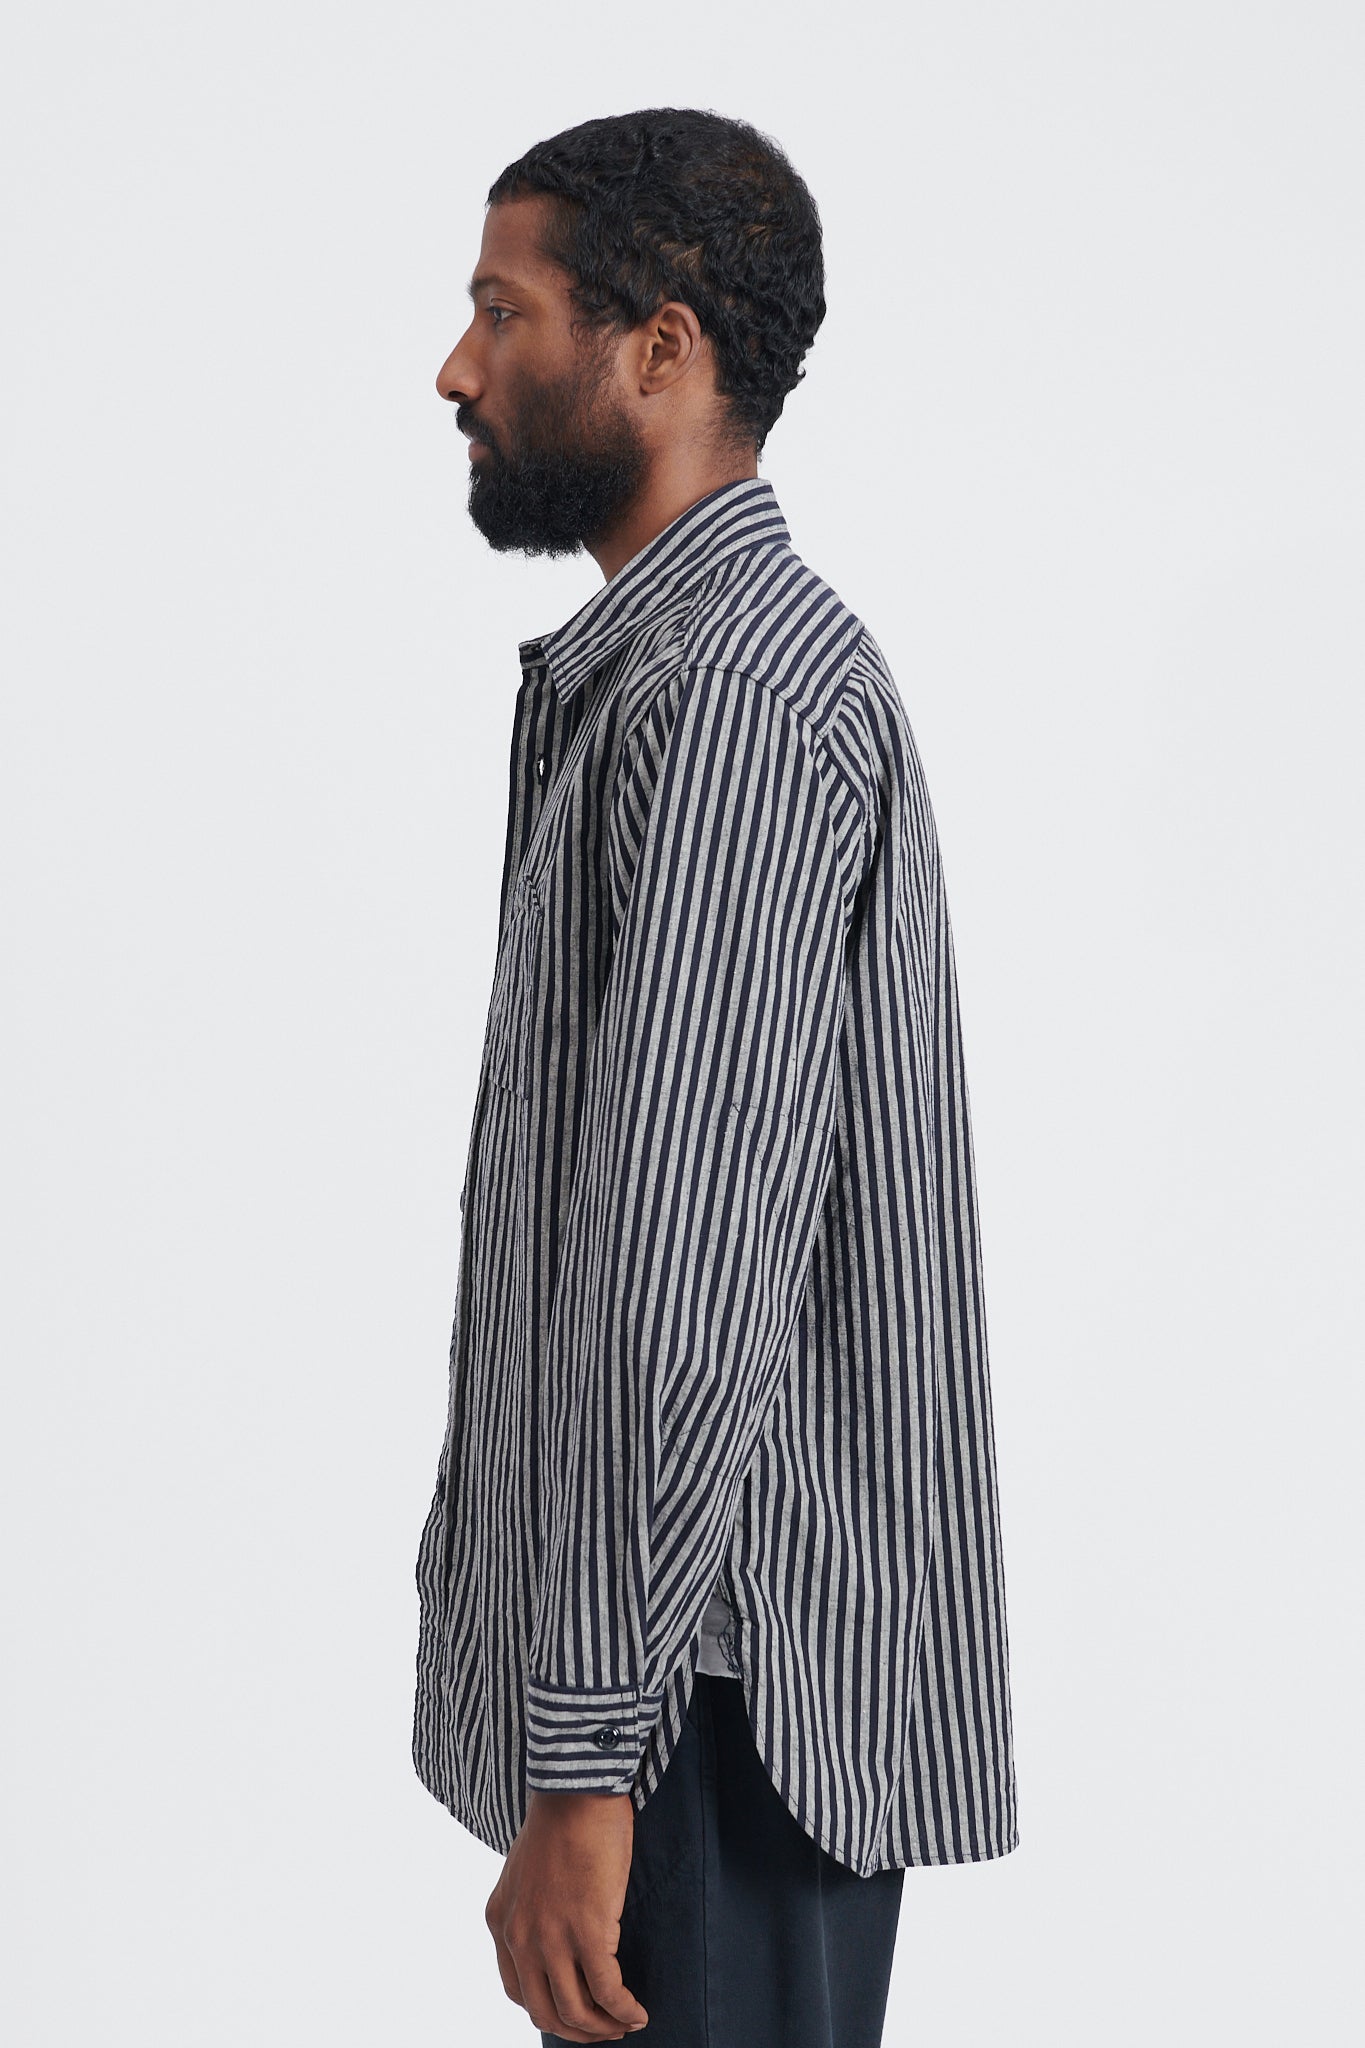 Work Shirt LC Wide Stripe - Navy/Grey